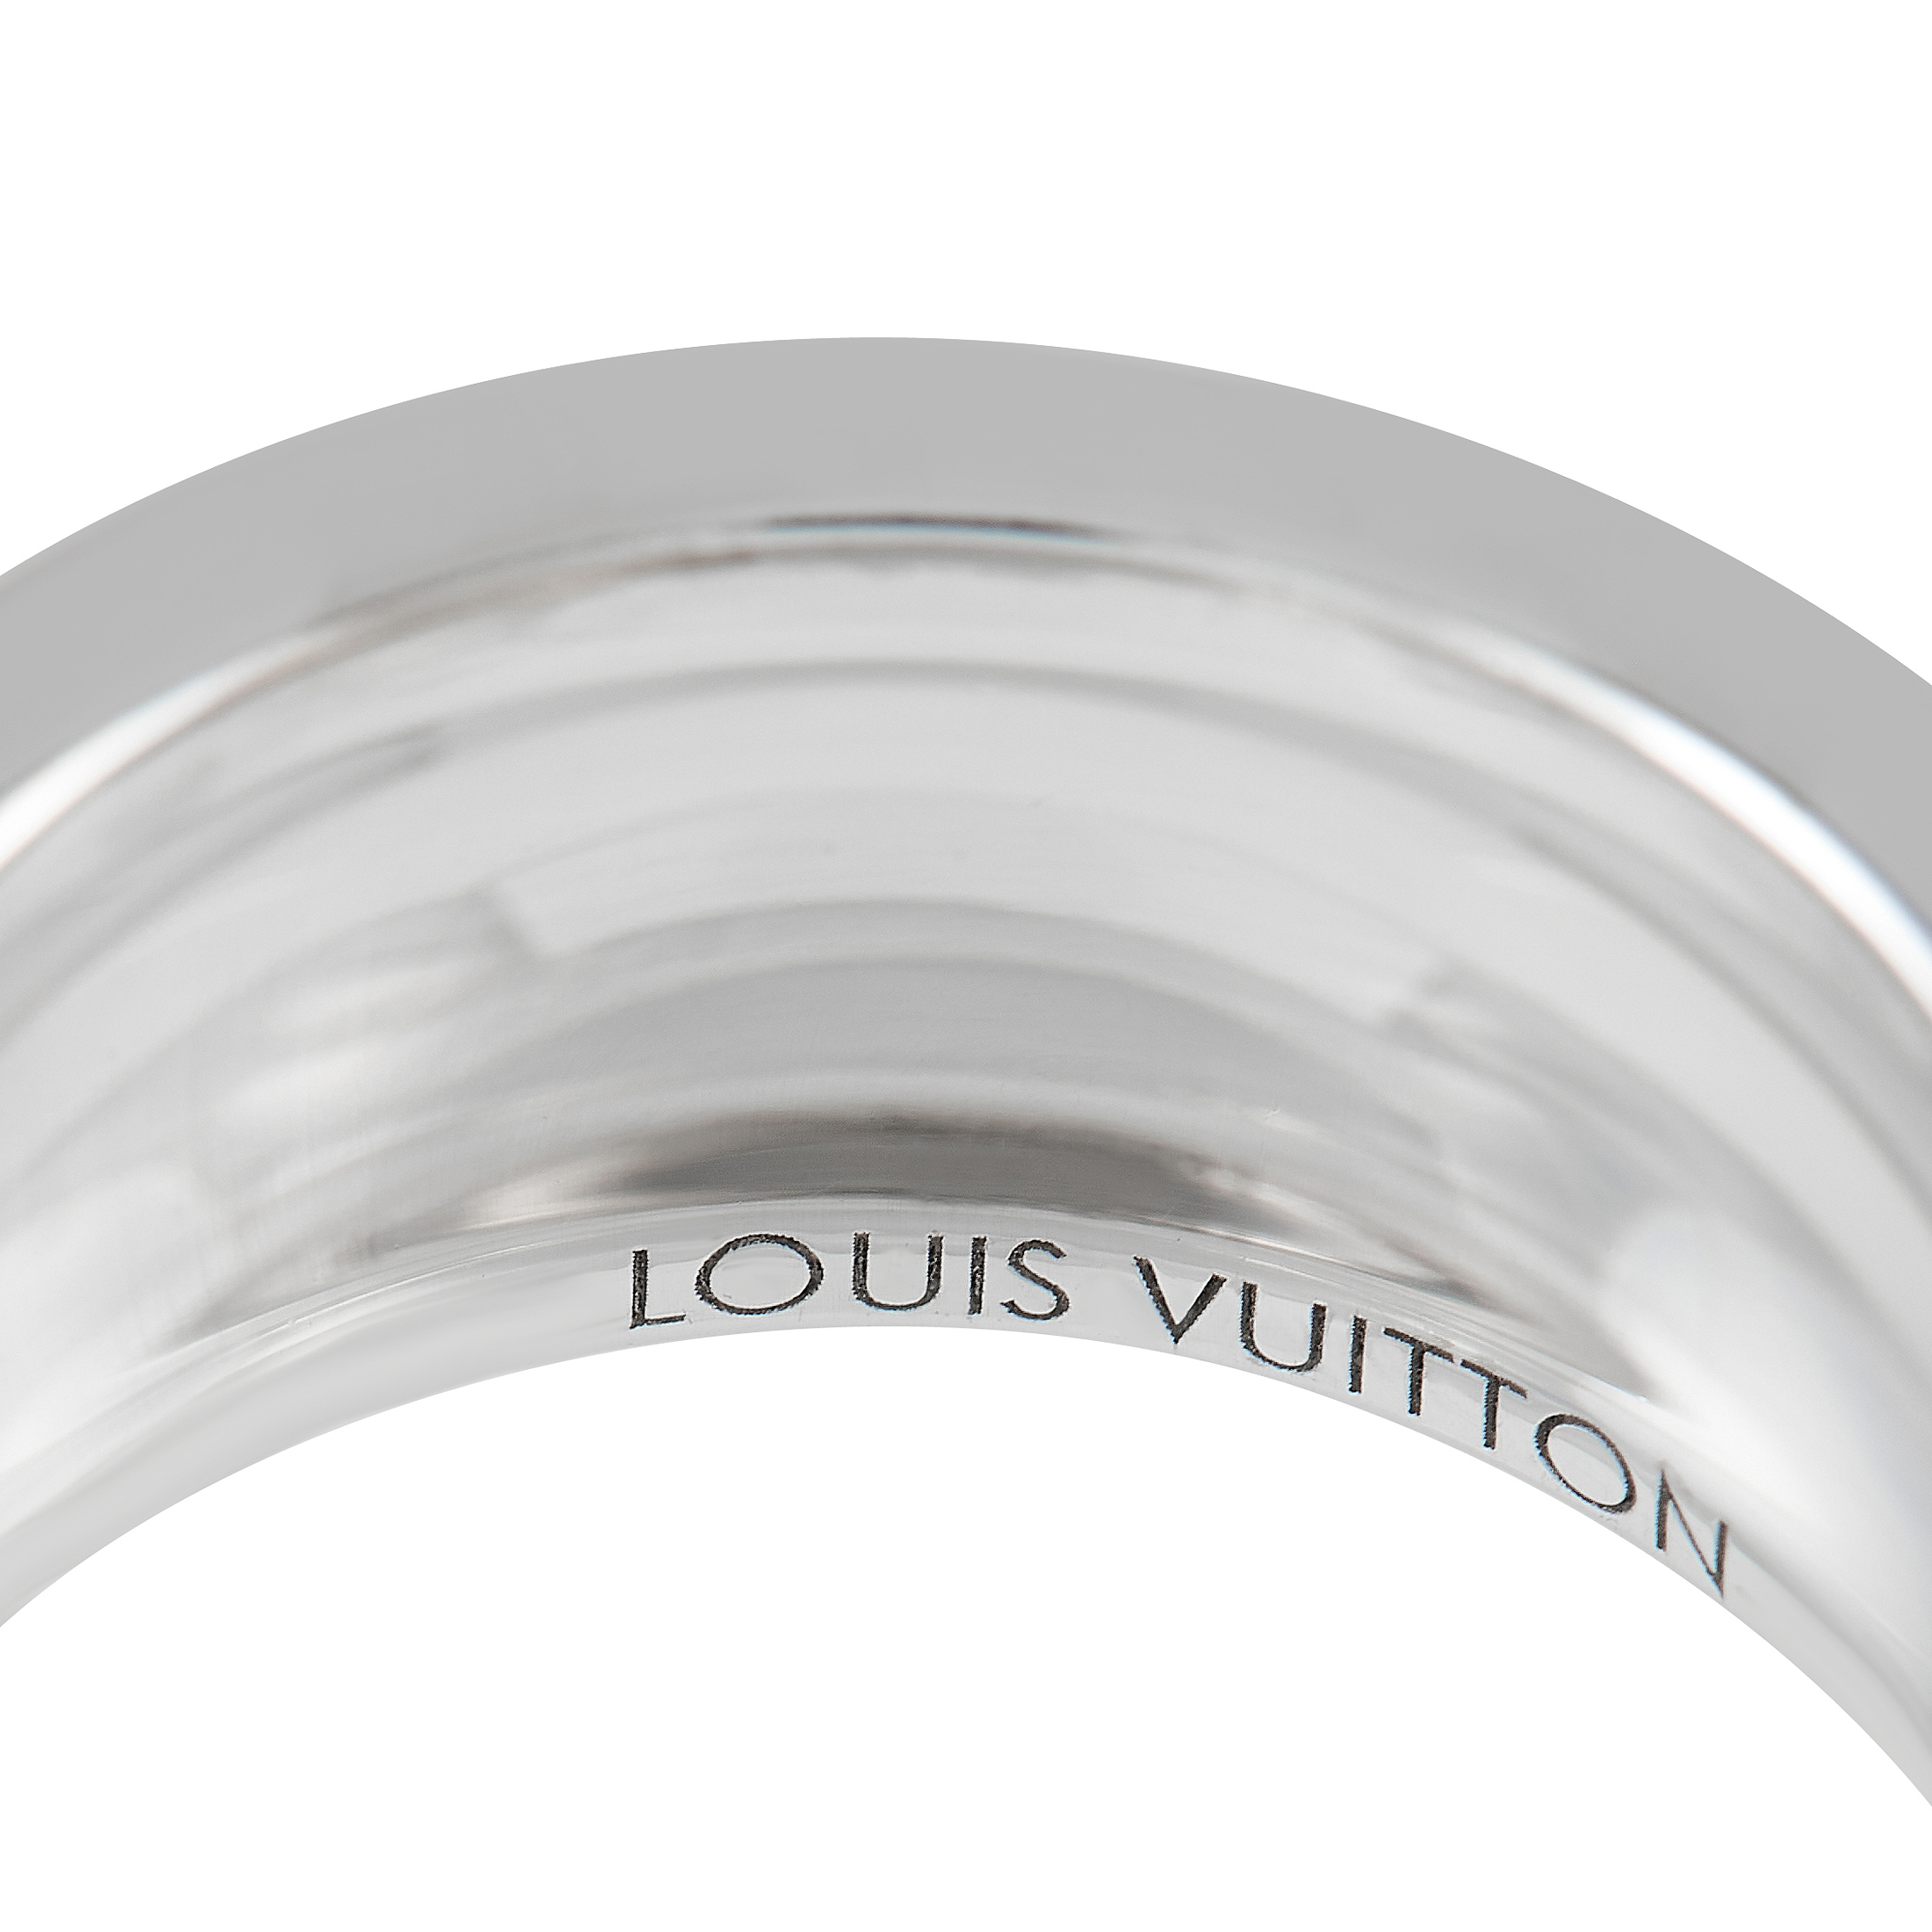 Louis Vuitton - Empreinte Ring White Gold and Diamonds - Grey - Unisex - Size: 048 - Luxury